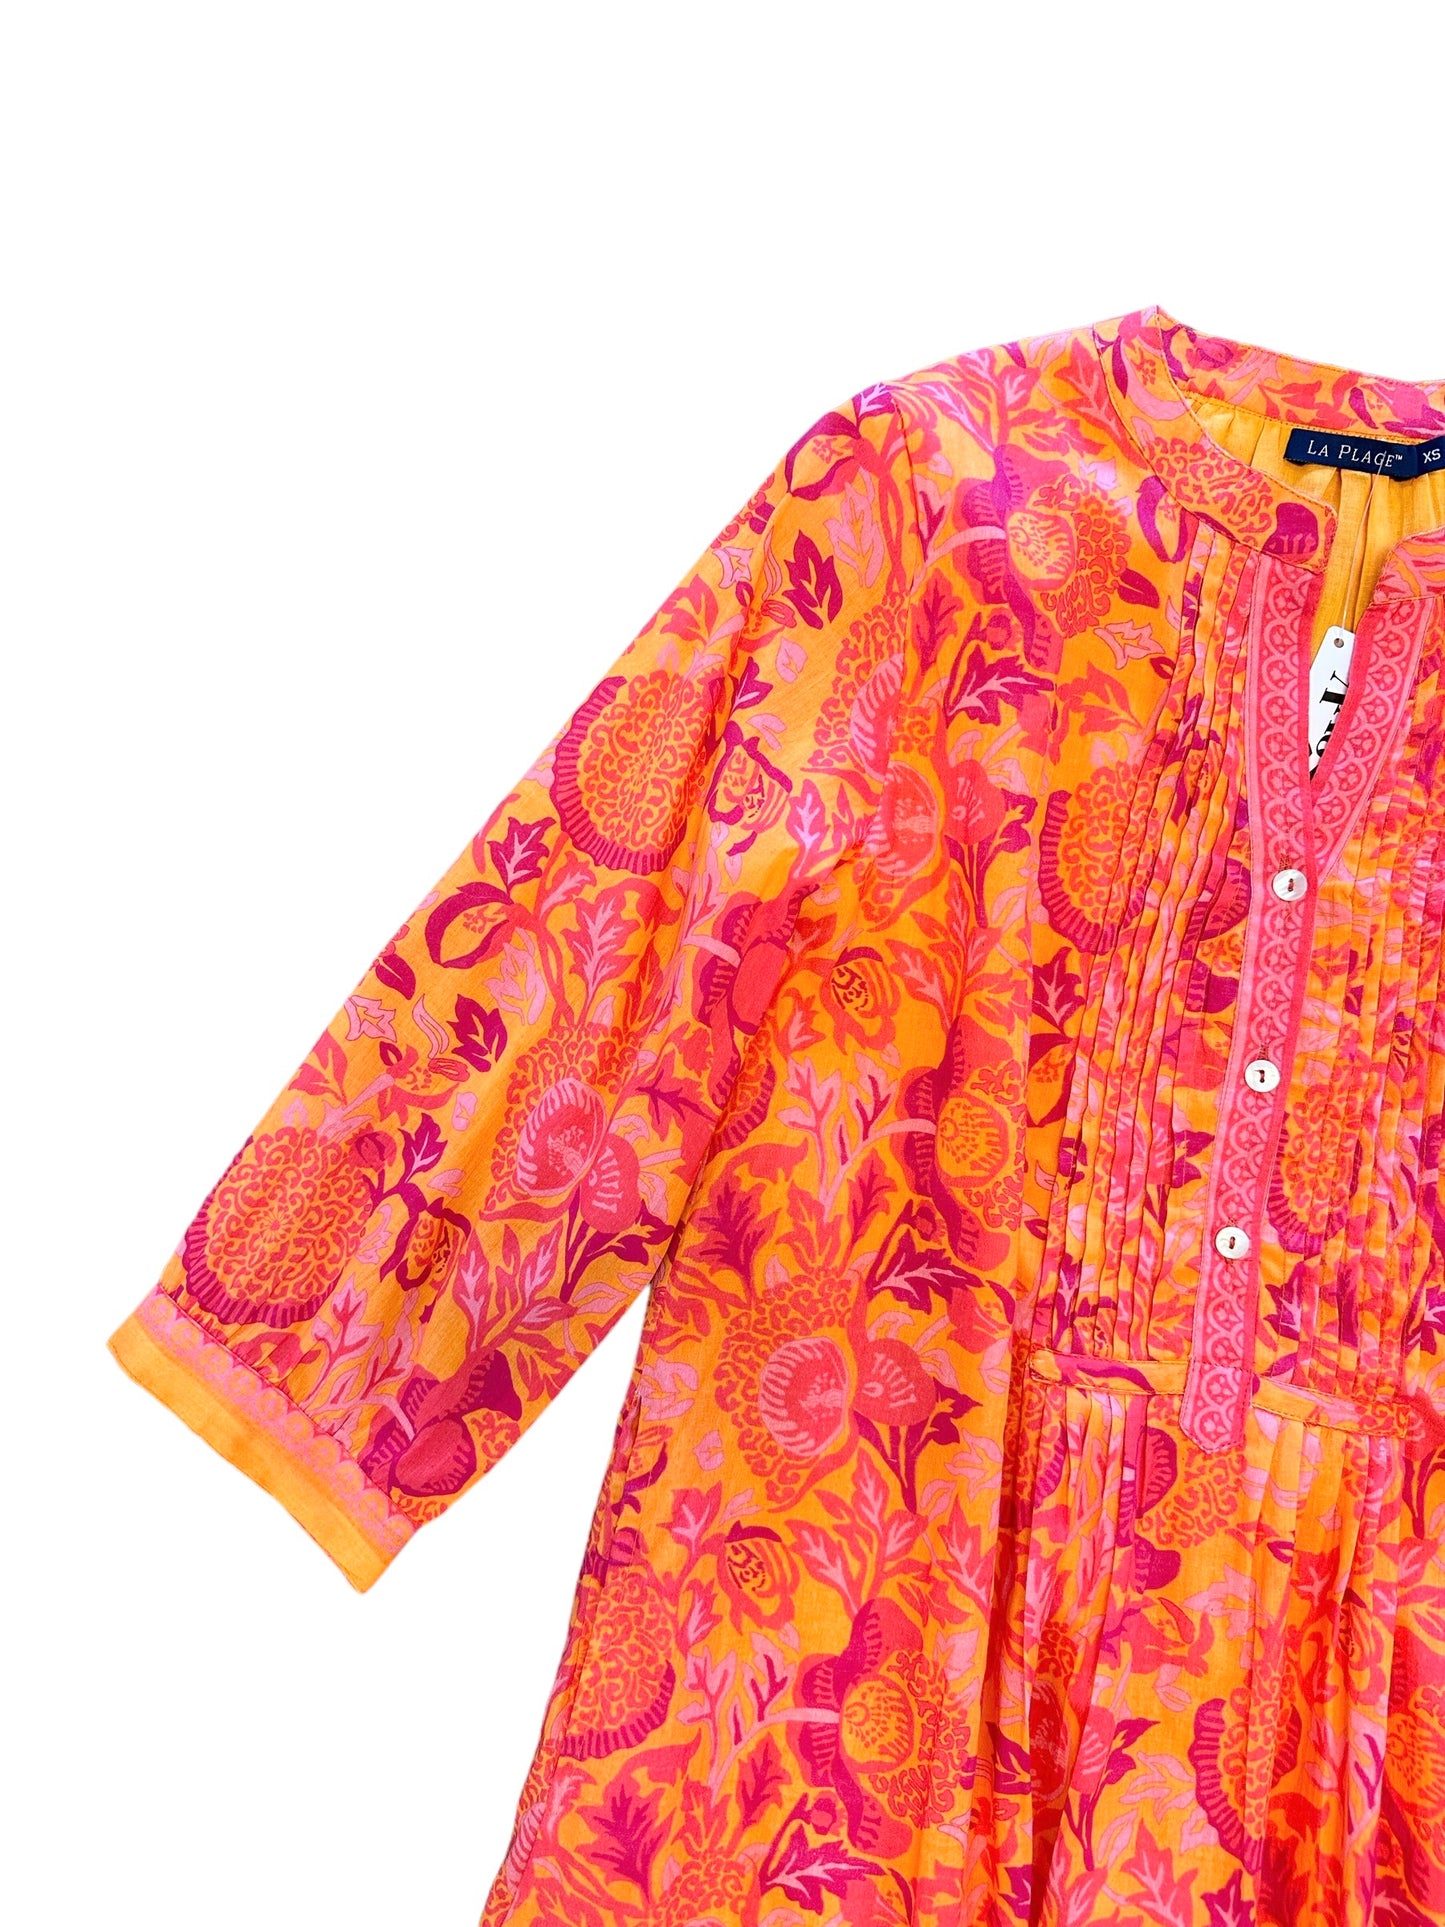 Maye Dress in floral orange/pinks by LA Plage